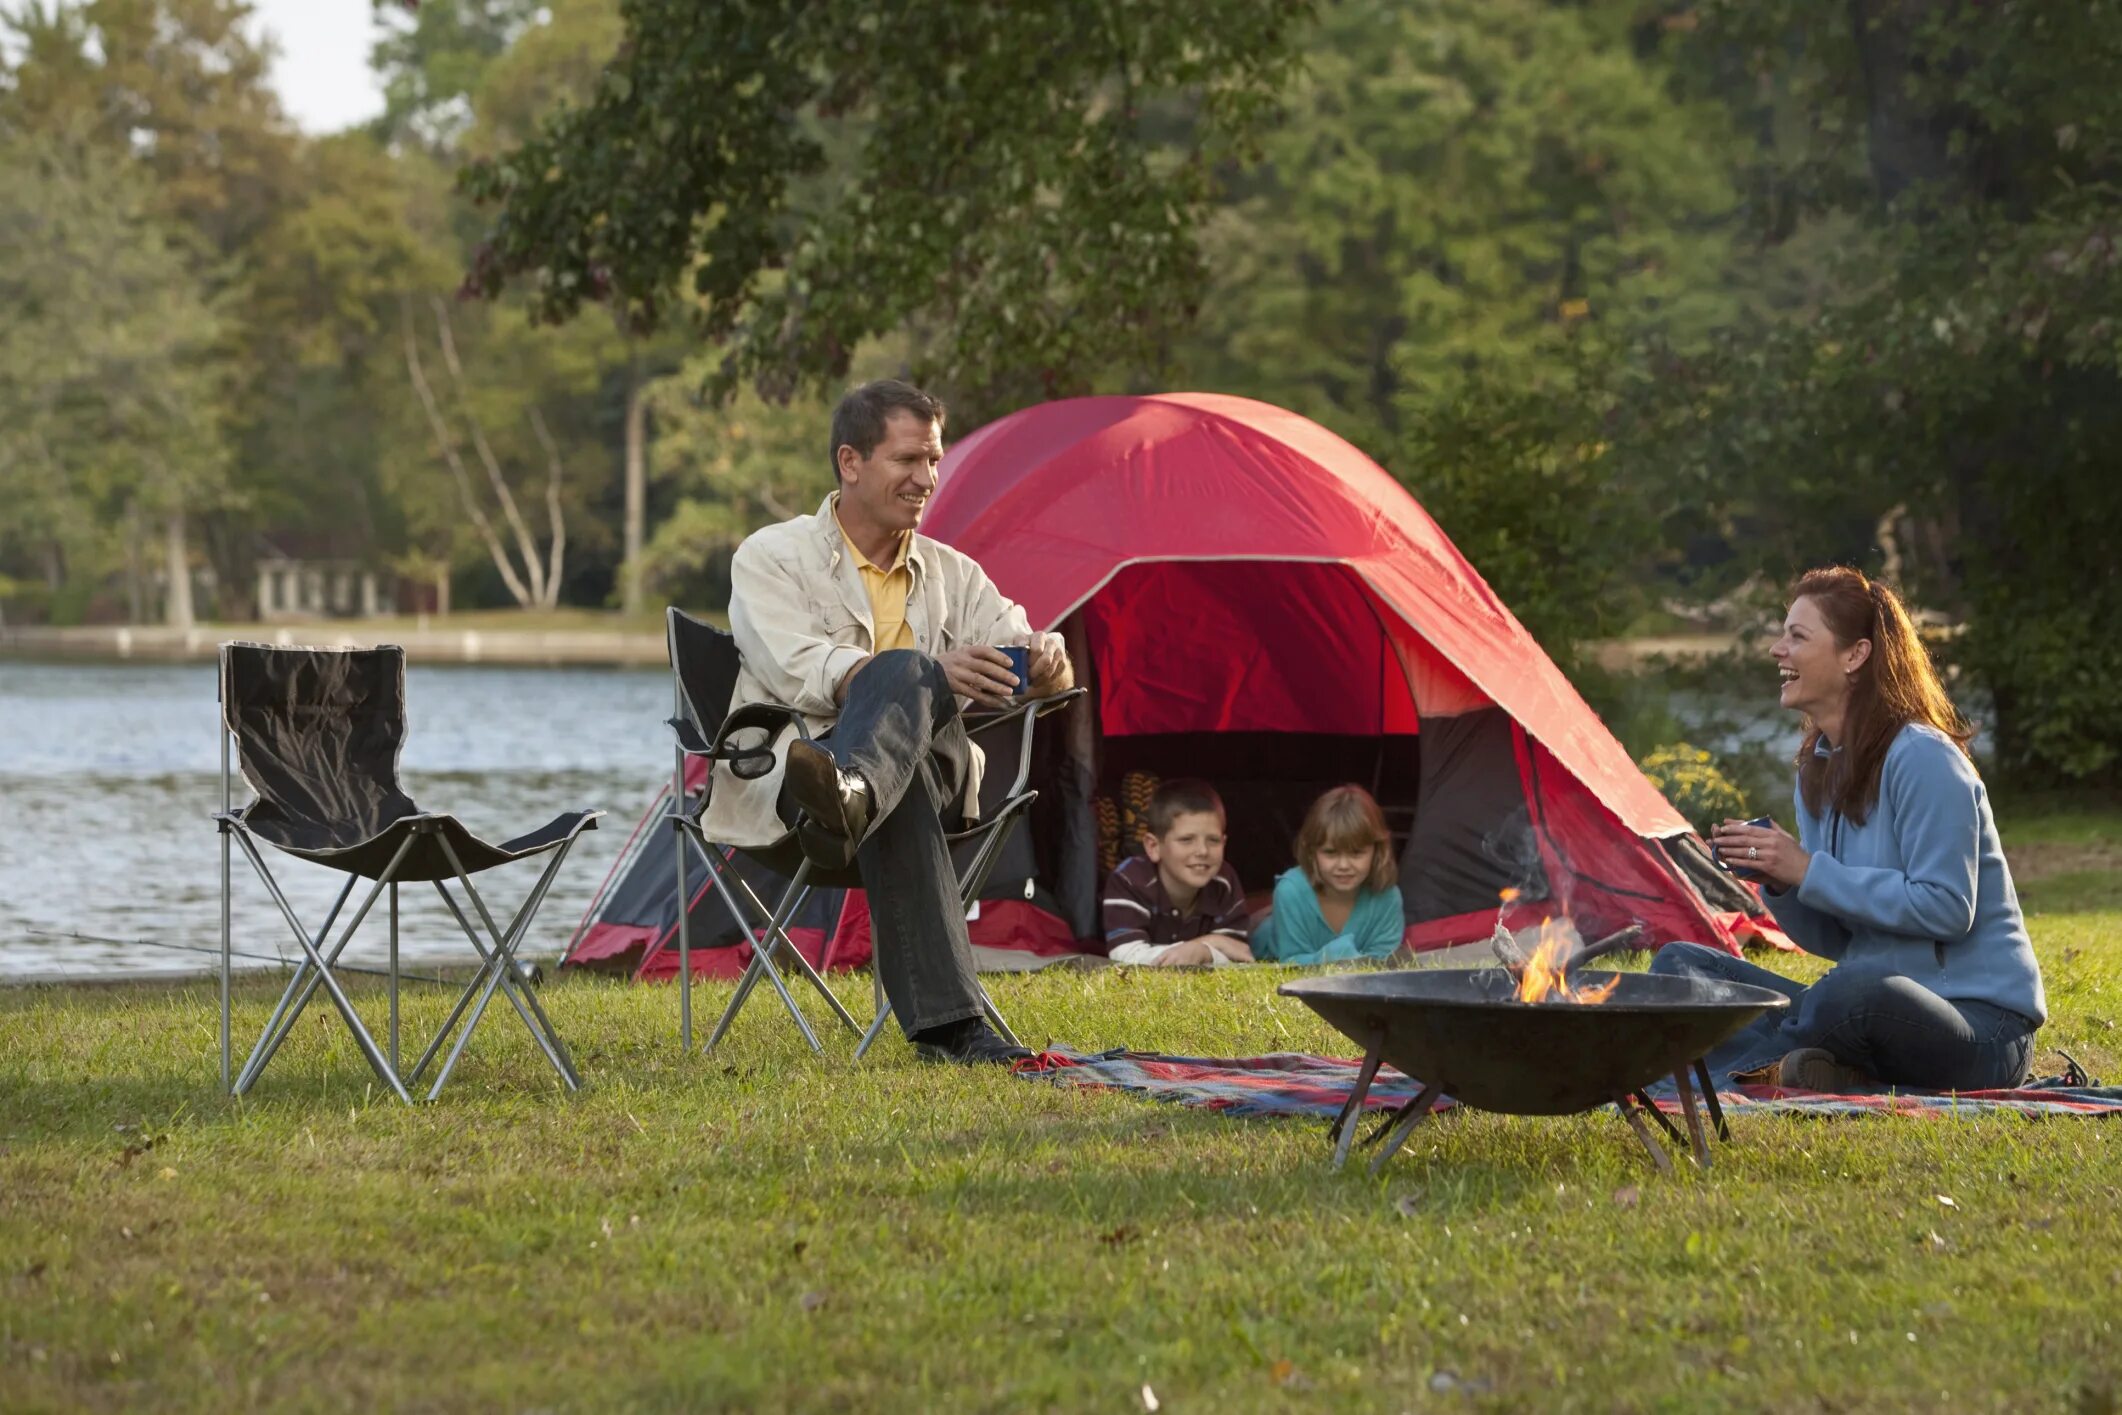 Outdoor camp. Палатка на природе. Отдыхаем на природе. Пикник с семьей на природе. Пикник на природе с палатками.